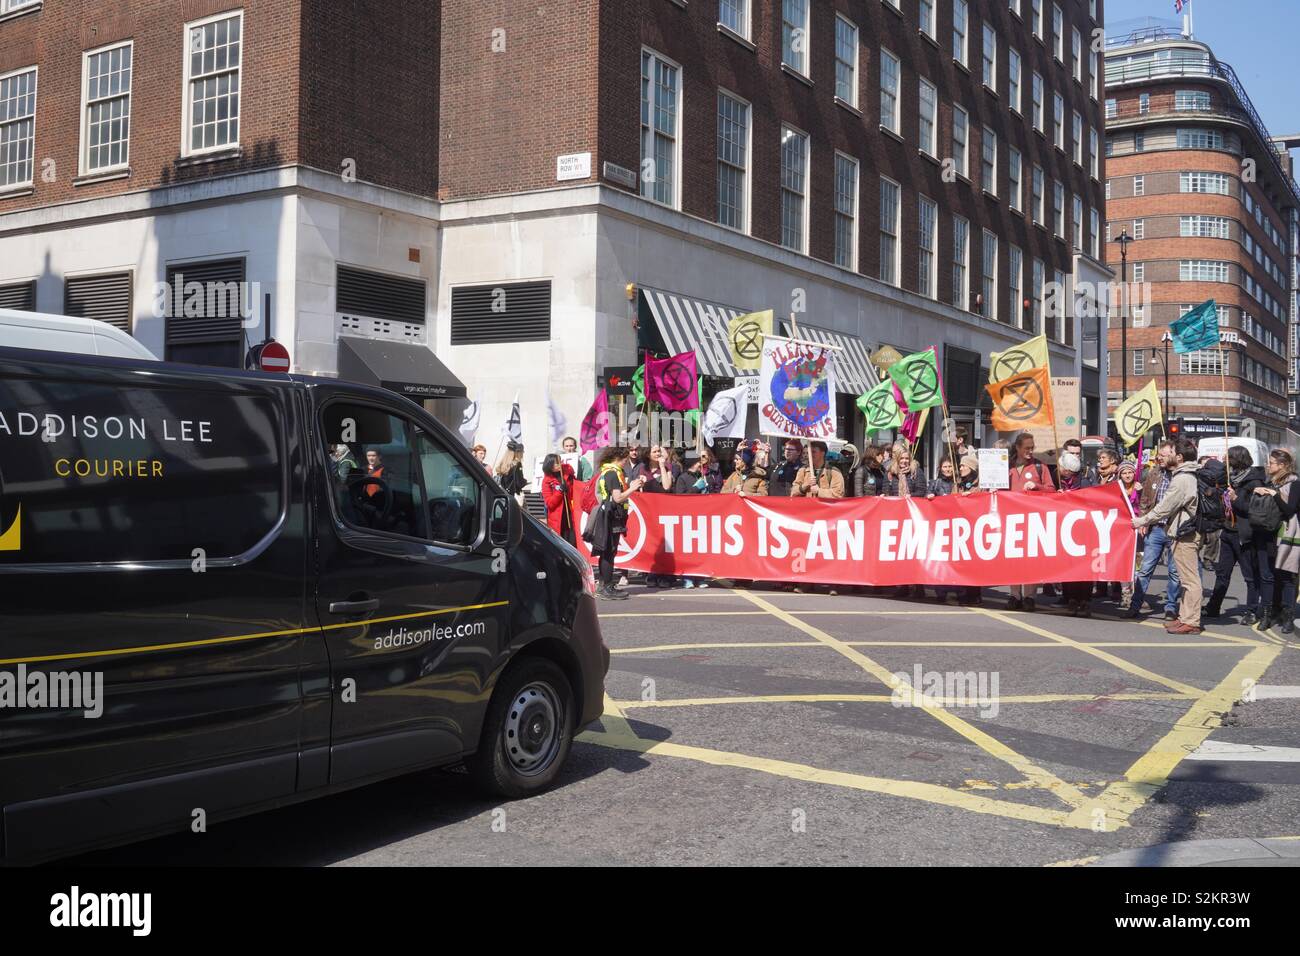 Klimawandel Demonstranten, Aussterben Rebellion, übernahm heute Marble Arch Aktion der britischen Regierung über den Klimawandel zu verlangen. Blockierten sie Straßen und verhindert die Autos aus. Stockfoto